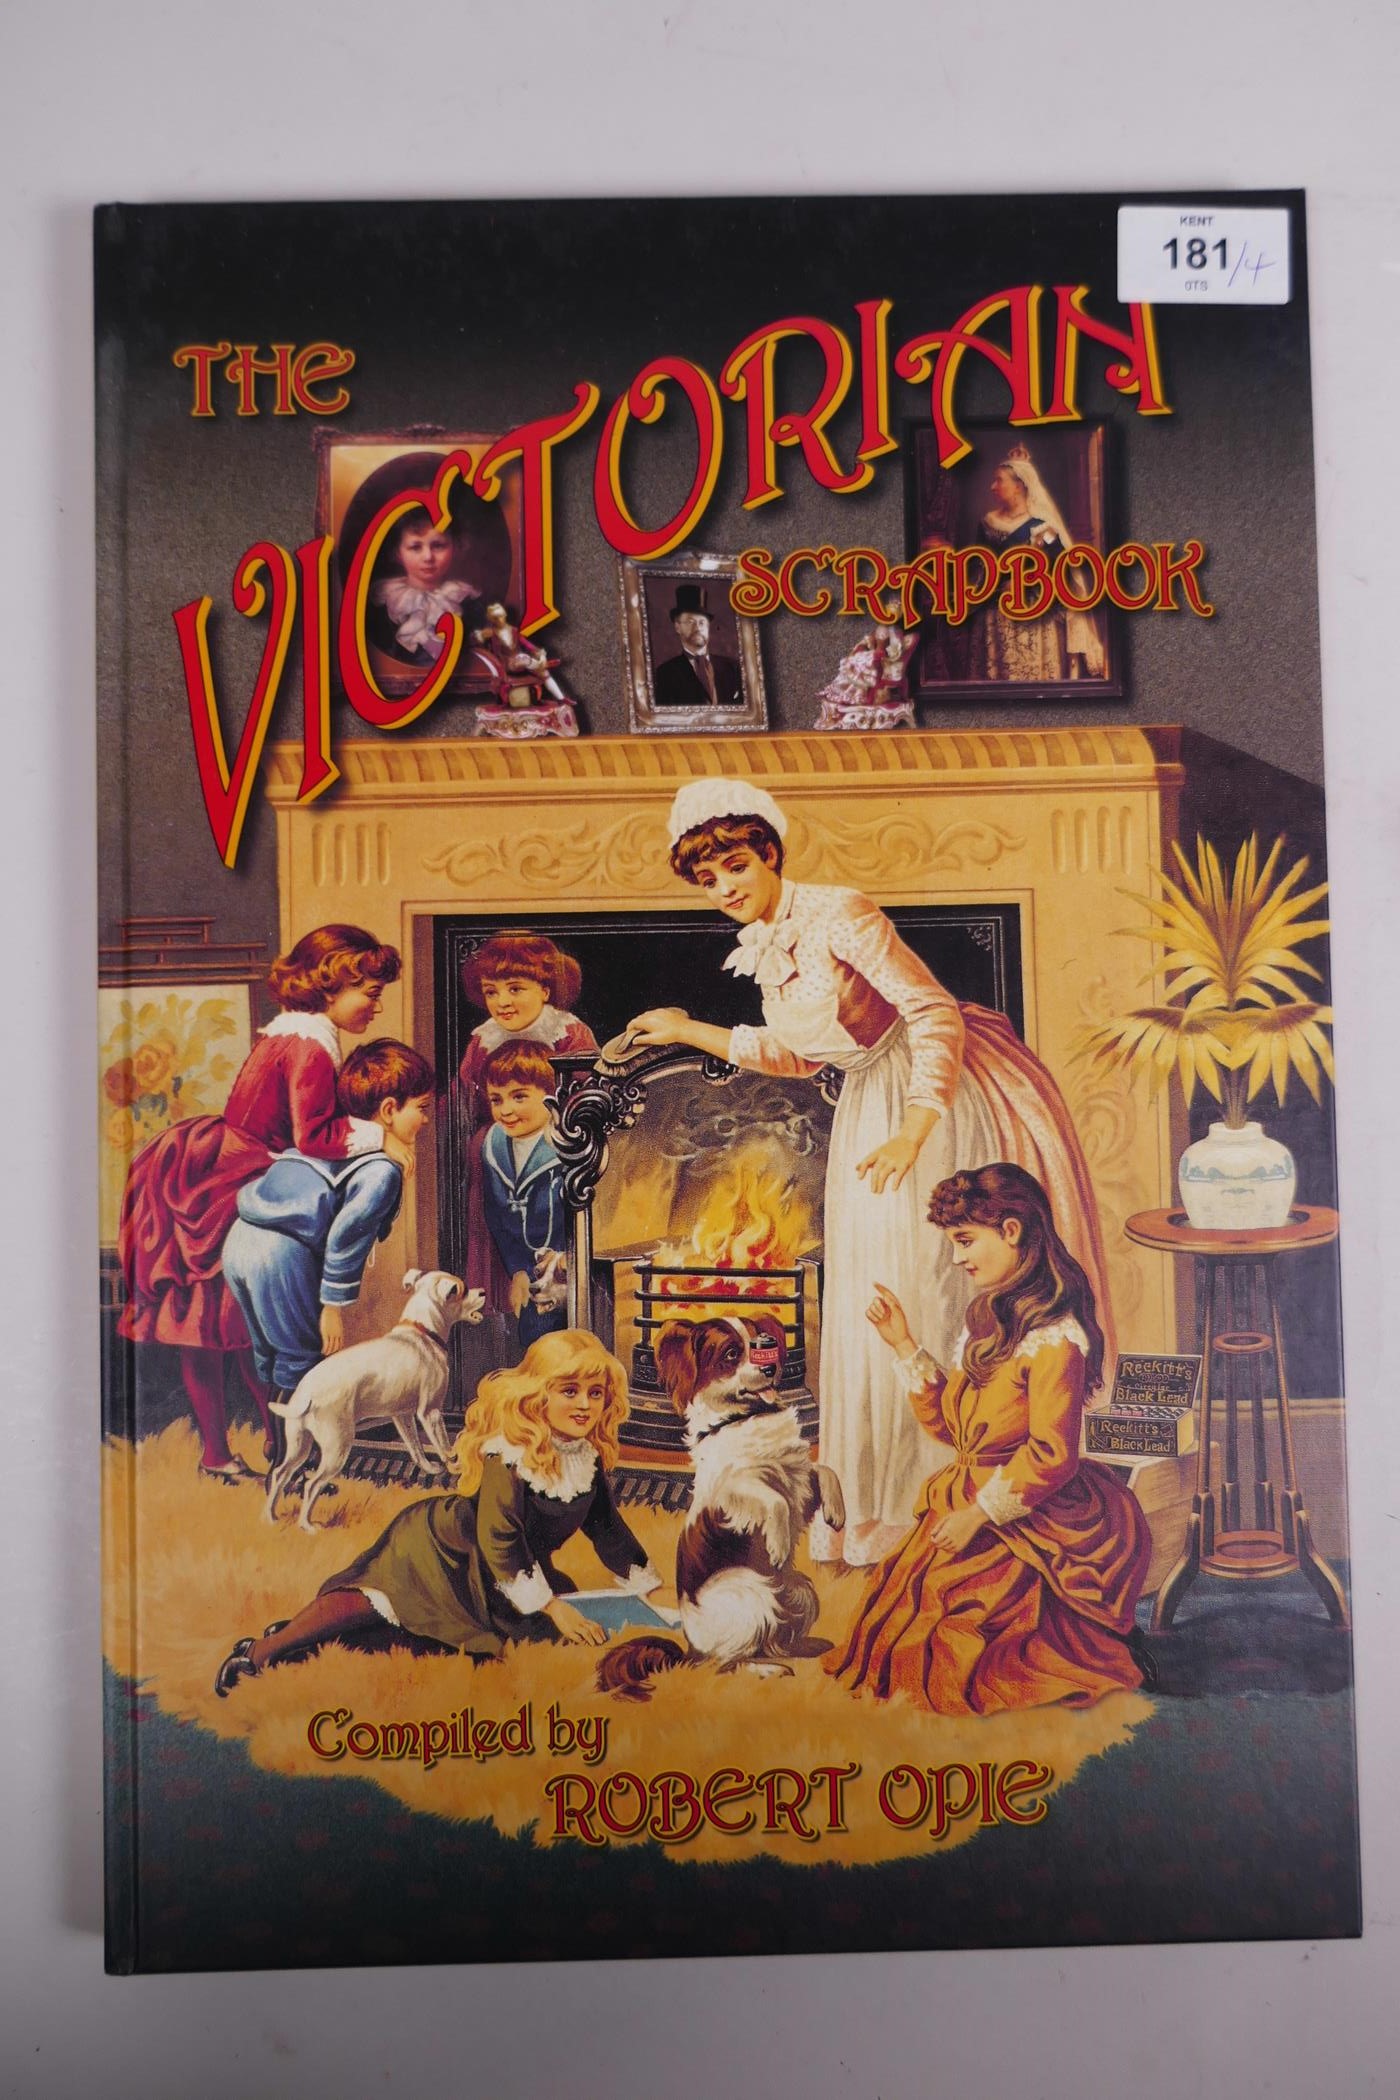 Robert Opie, ‘The Victorian Scrapbook’, ‘The Edwardian Scrapbook, ‘The 1930s Scrapbook’ and others - Image 2 of 9